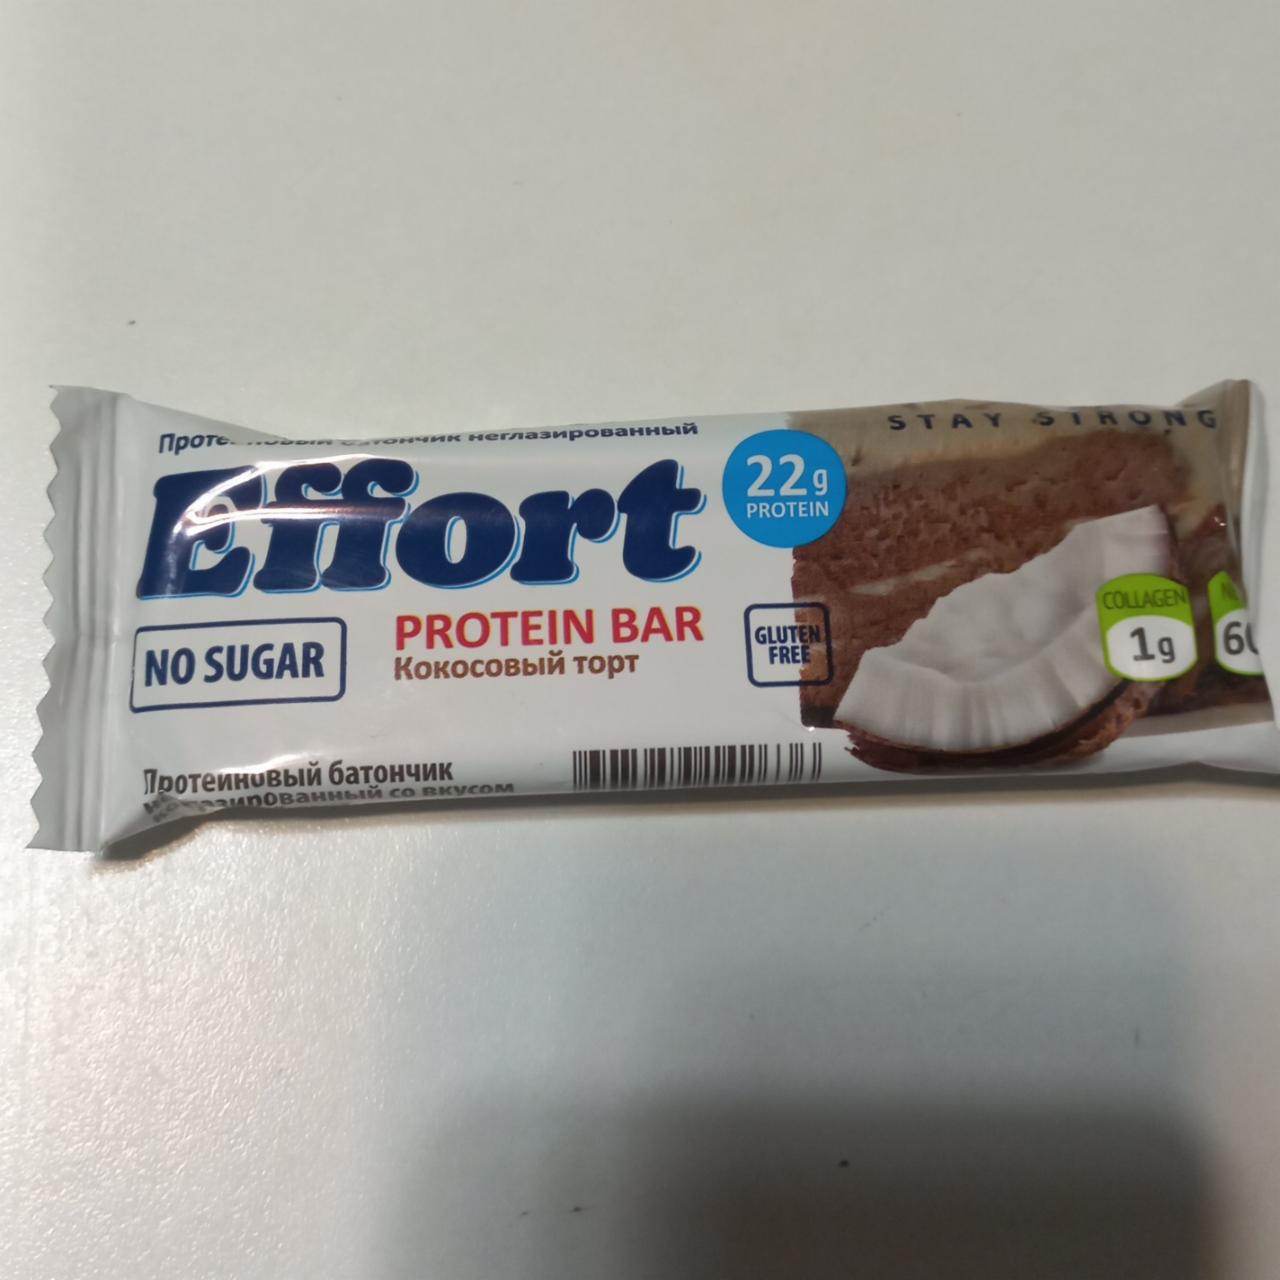 Фото - Protein bar Кокосовый торт Effort